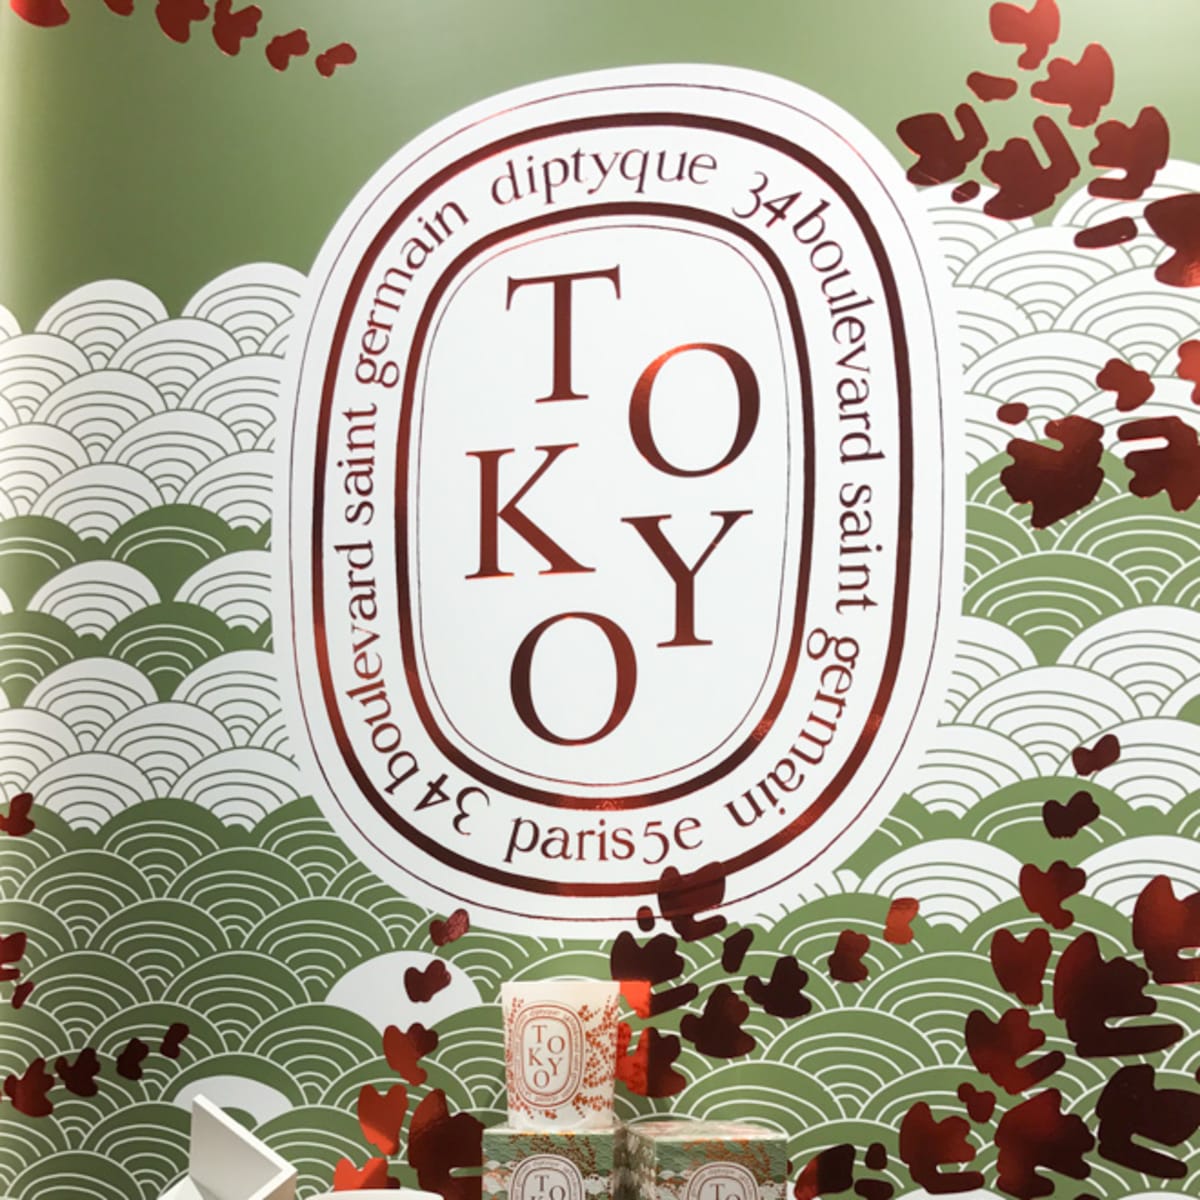 ディプティック「TOKYO」キャンドルは檜の香り 銀座店で限定販売